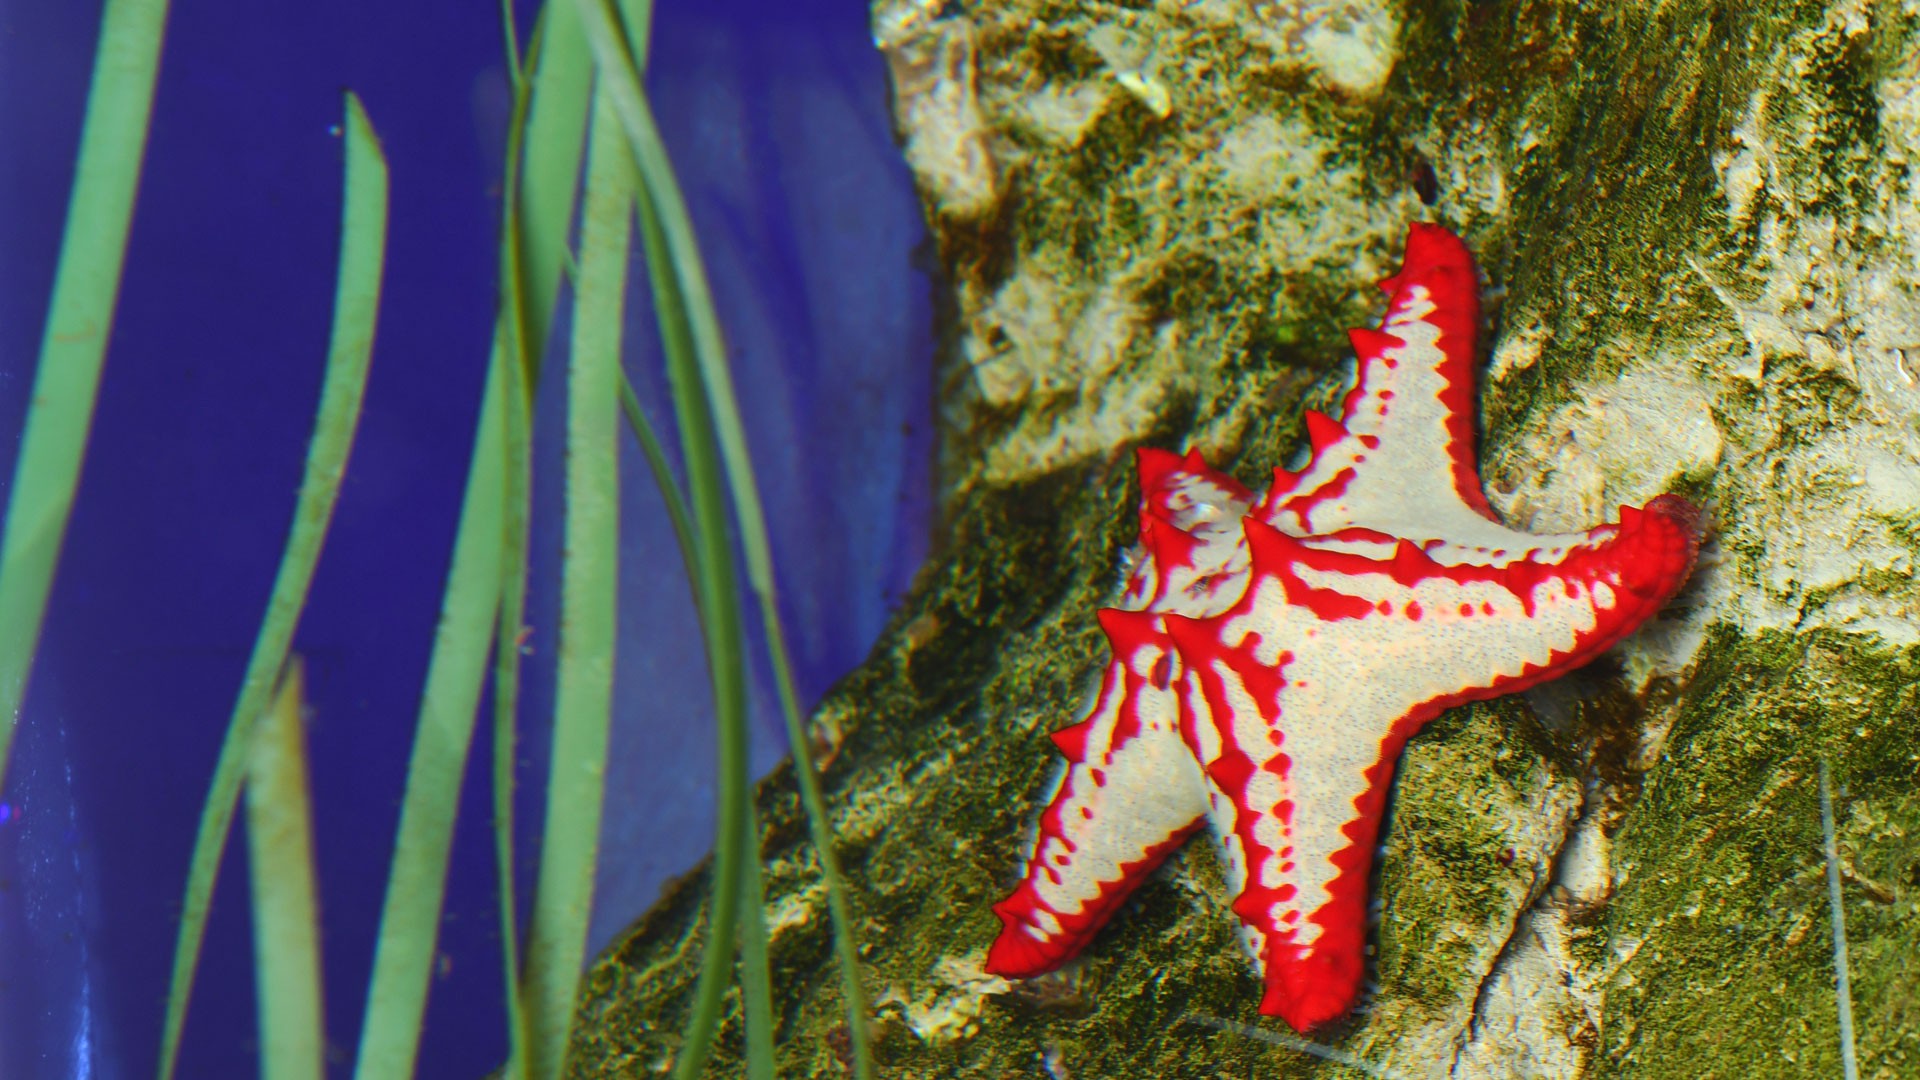 Mediterranean Red Sea Star